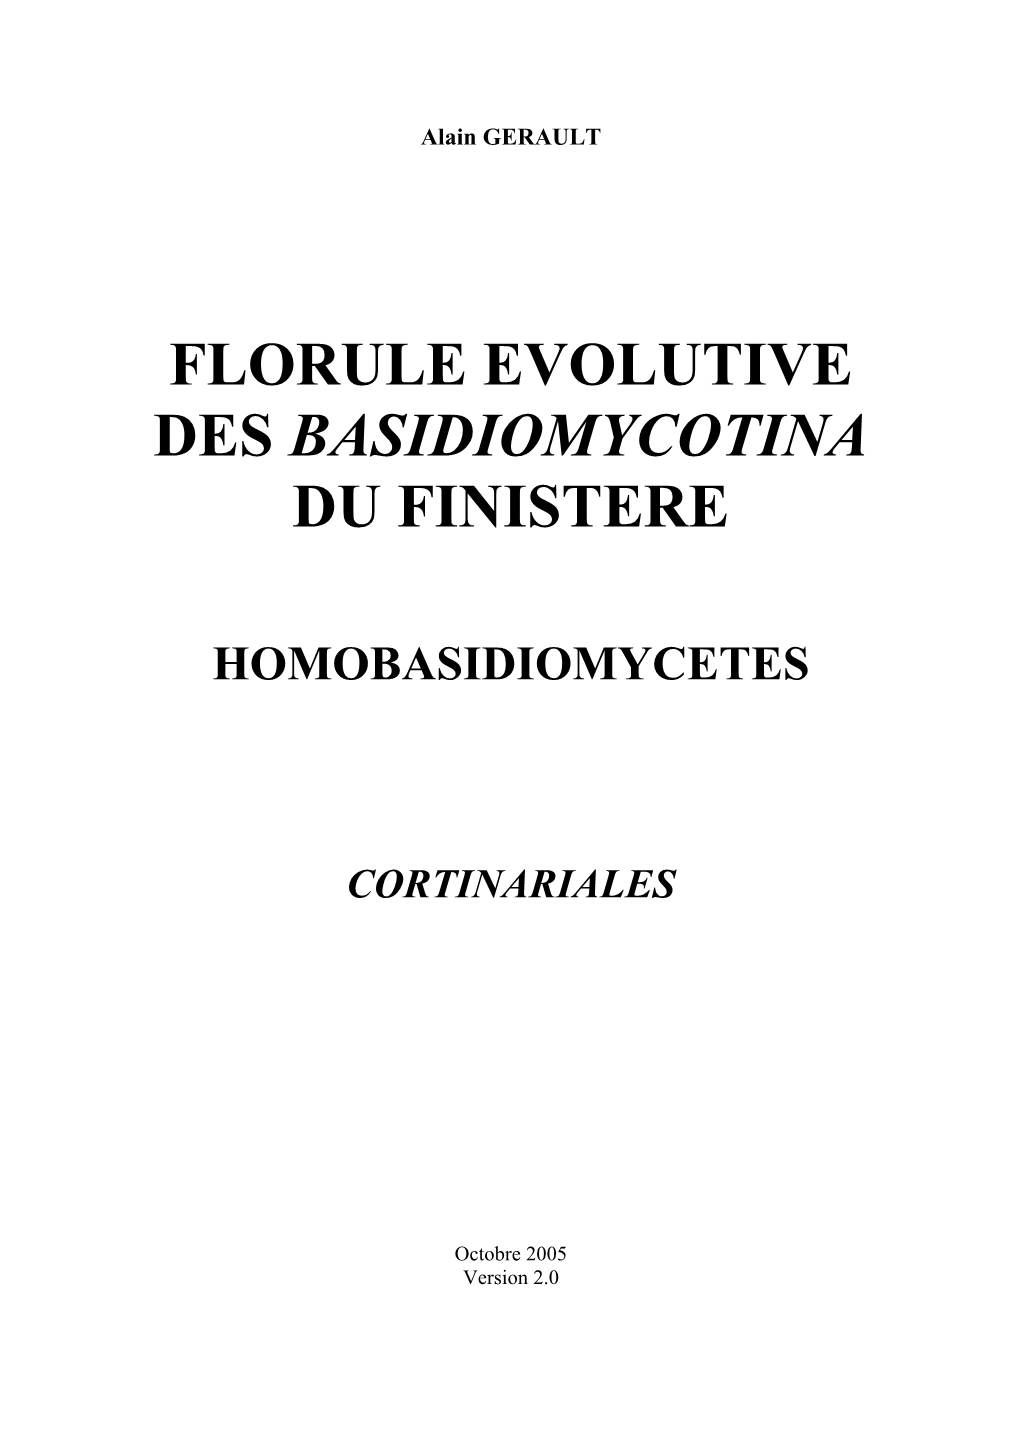 Florule Evolutive Des Basidiomycotina Du Finistere